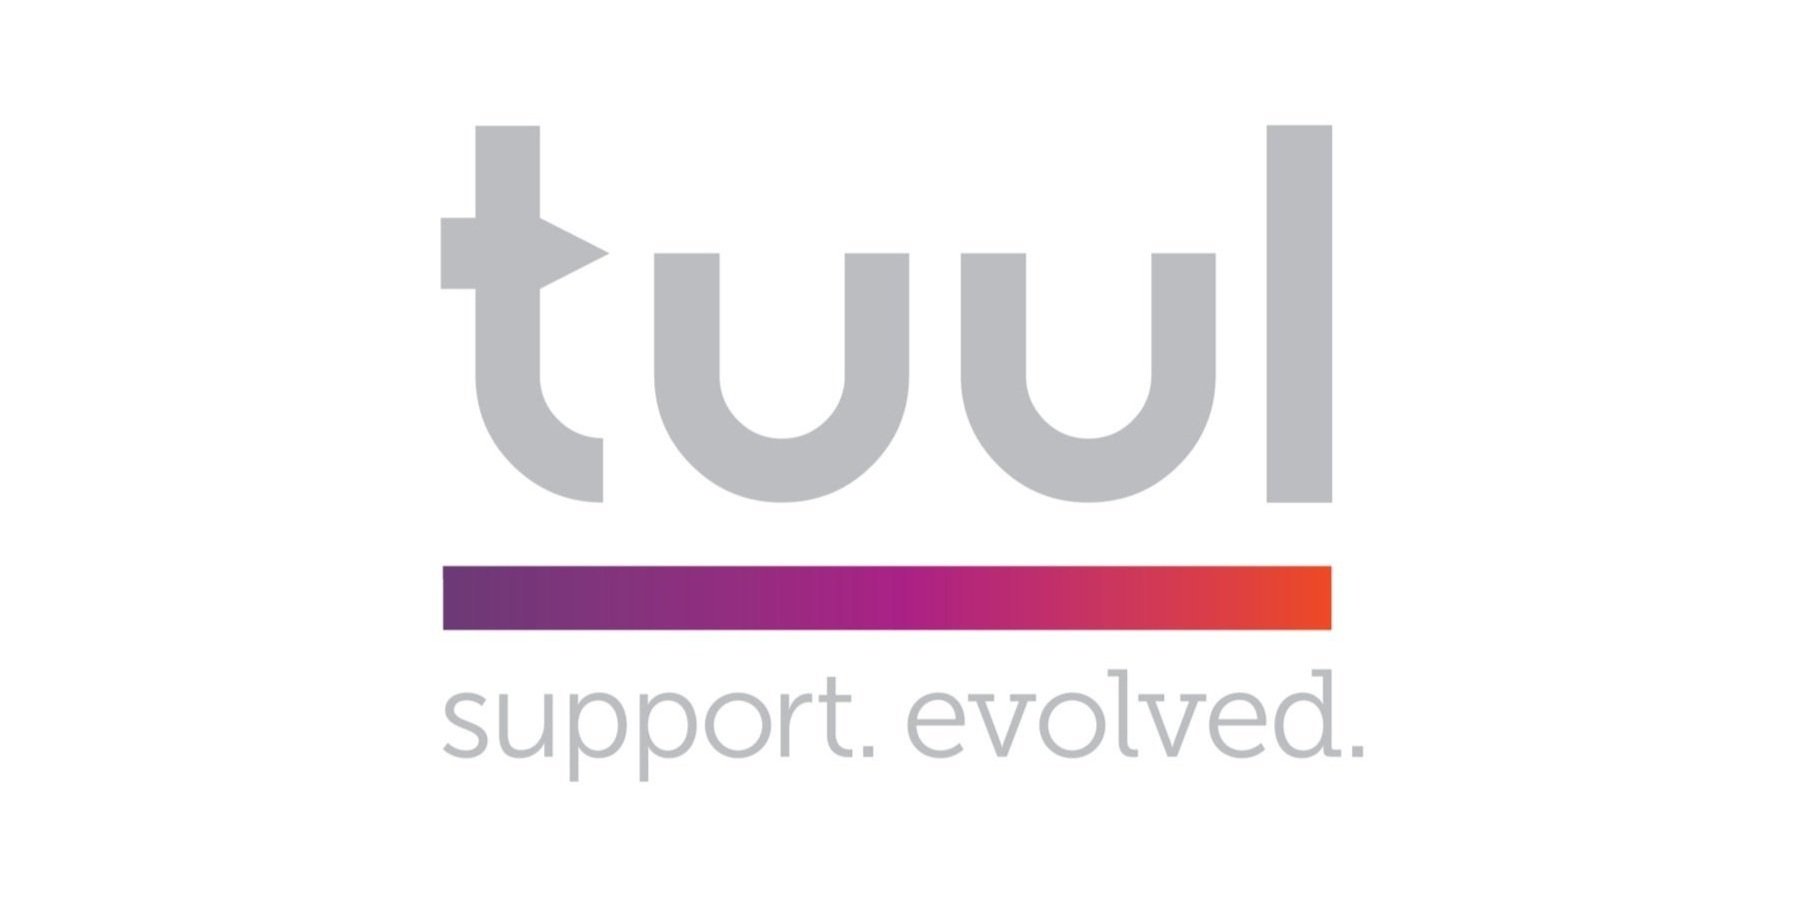 tuul-logo-support-evolved.jpg